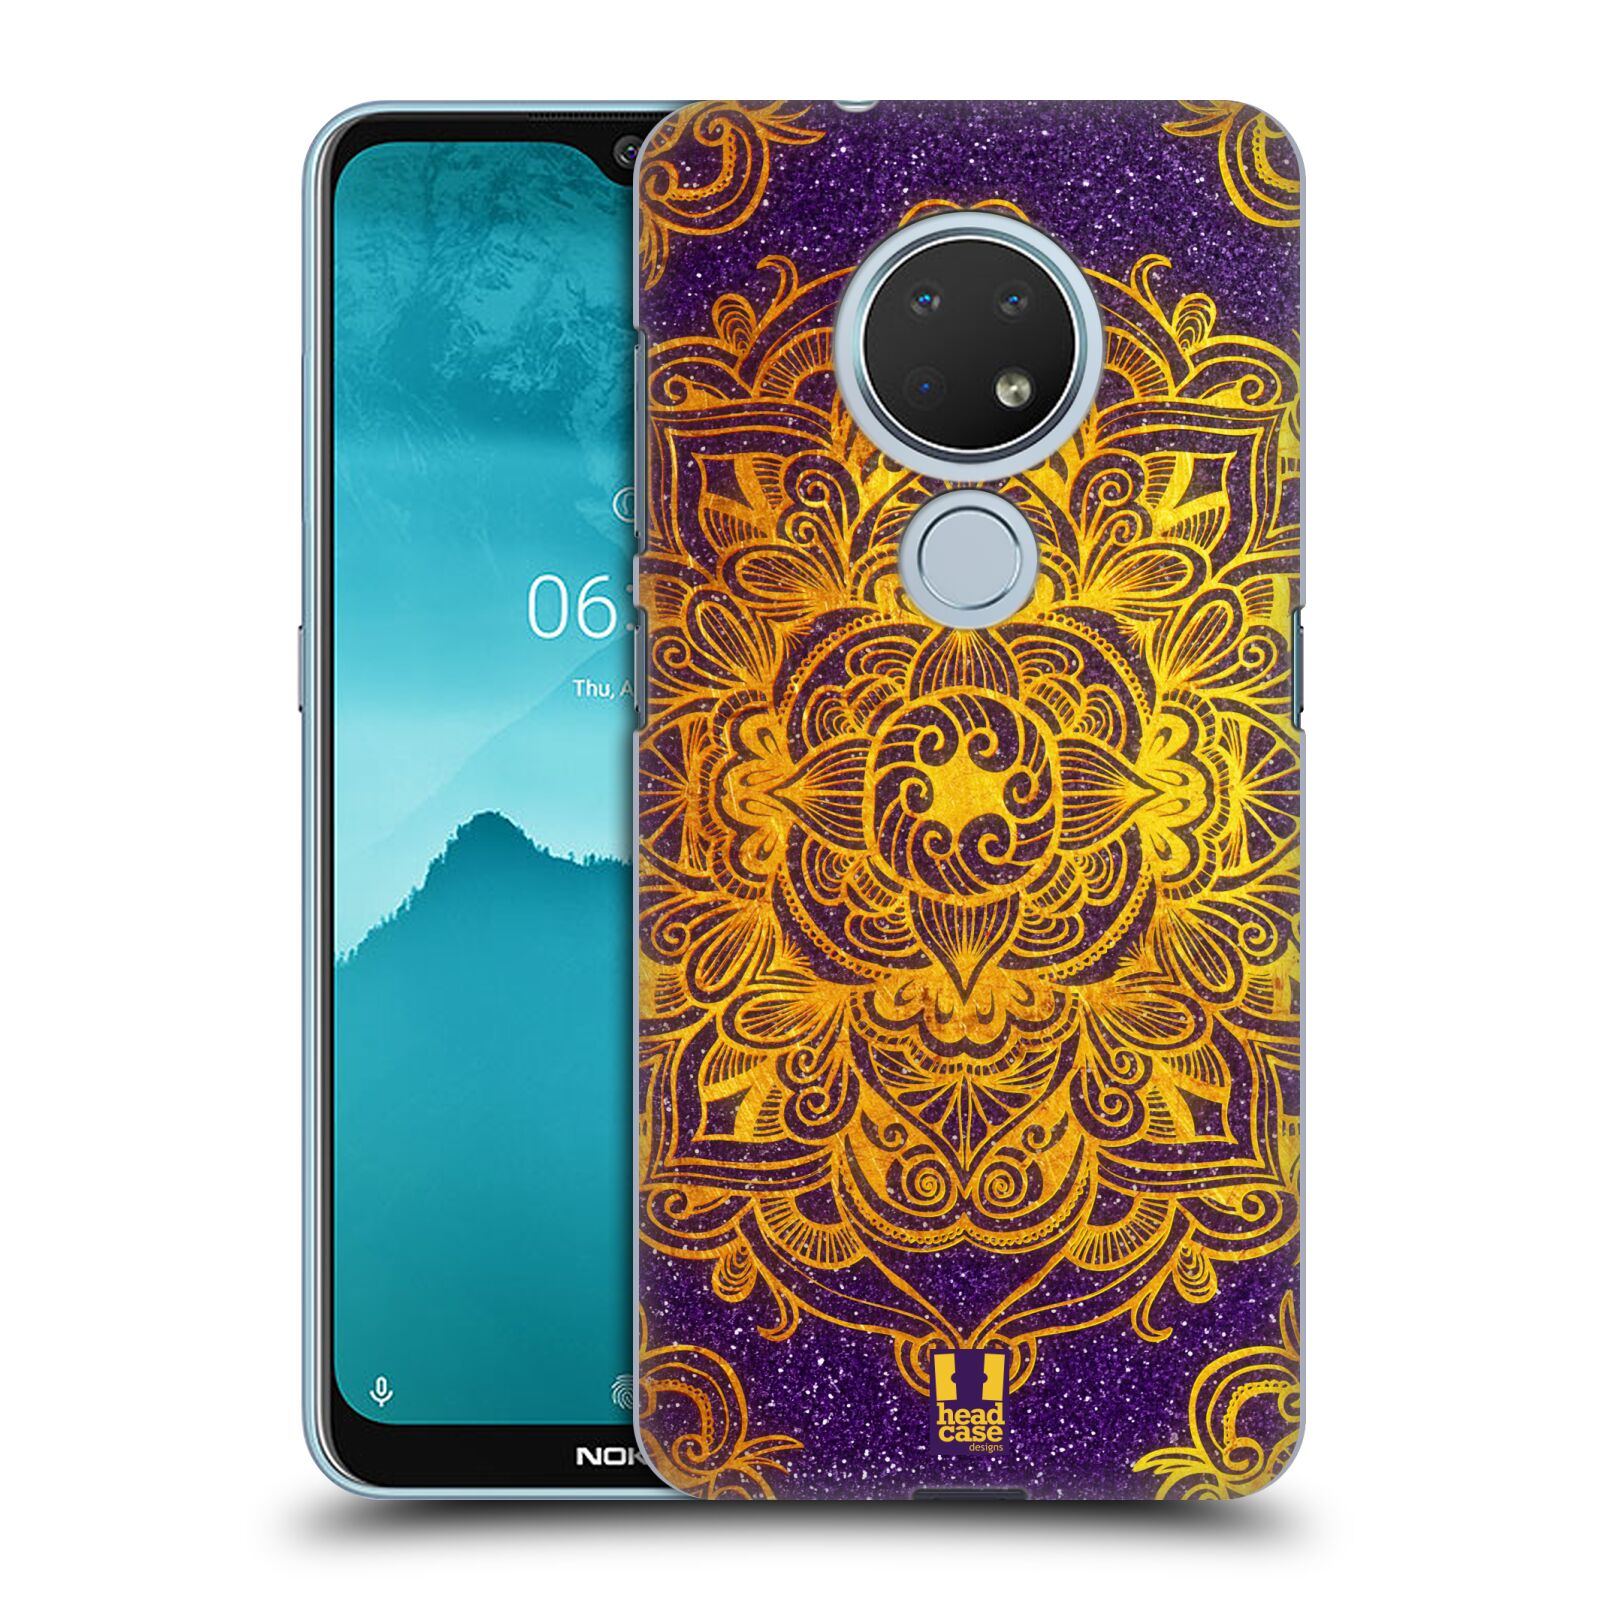 Pouzdro na mobil Nokia 6.2 - HEAD CASE - vzor Indie Mandala slunce barevná ZLATÁ A FIALOVÁ